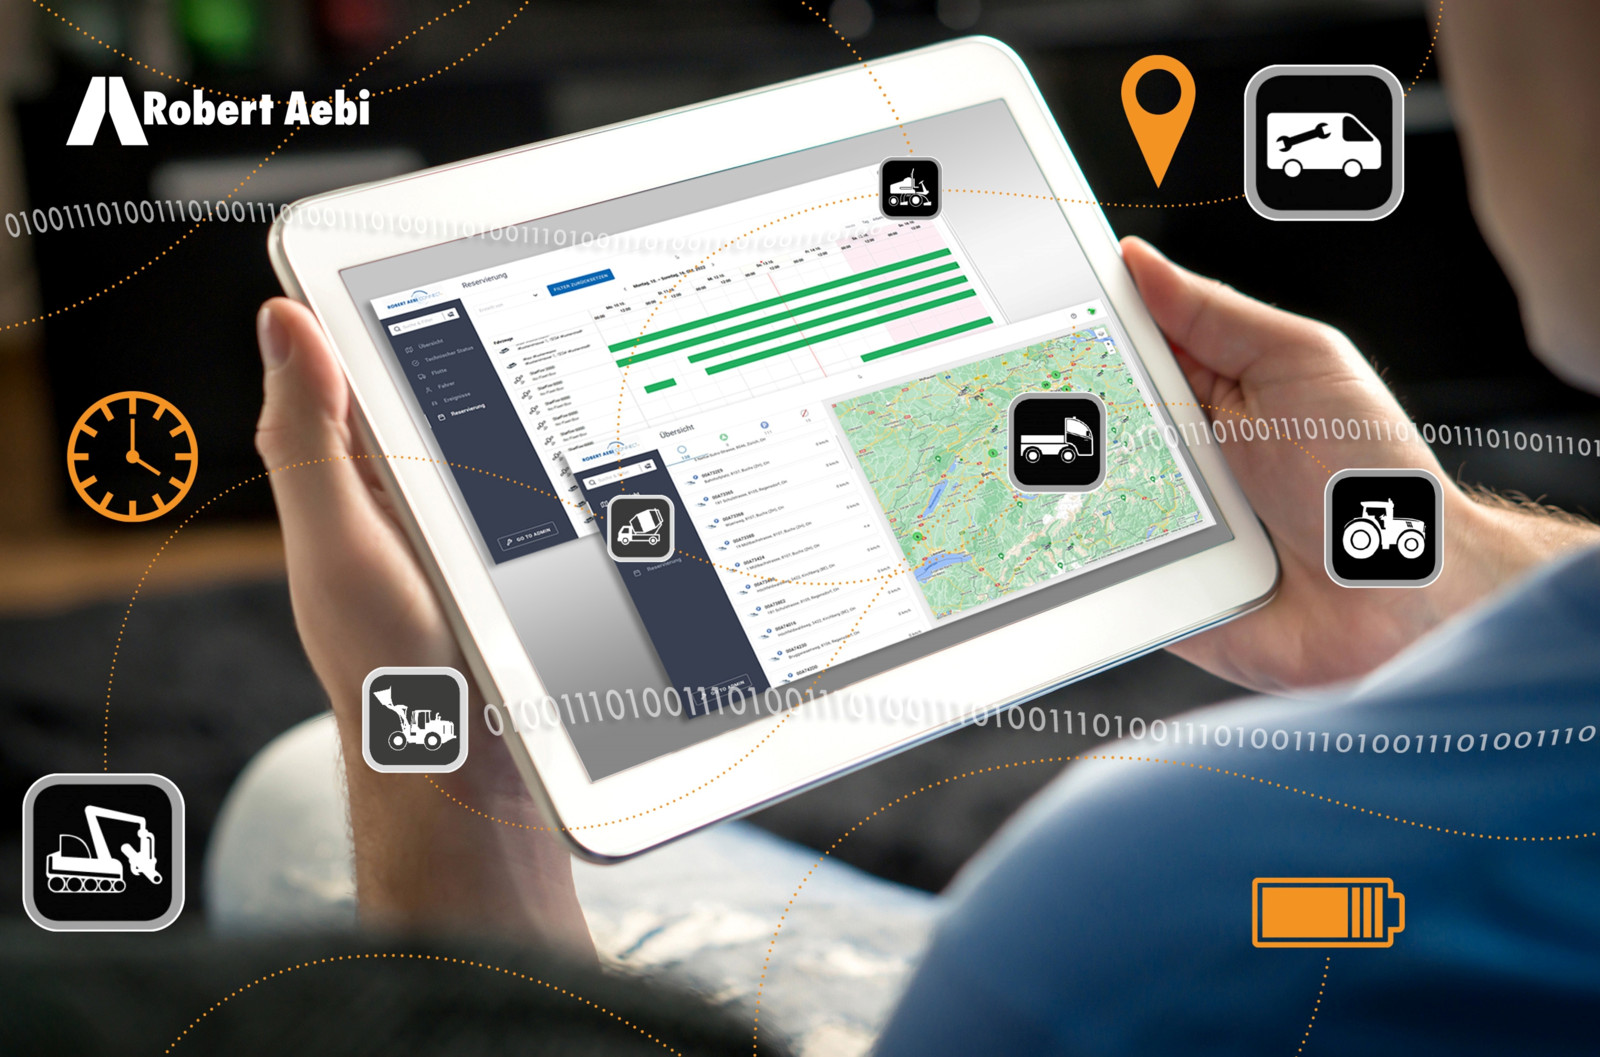 Das System Robert Aebi Connect bietet dem Nutzer stets eine aktuelle Übersicht über seine Flotte, erleichtert die Einsatzplanung maßgeblich und optimiert Auswertungen und Abrechnungen.